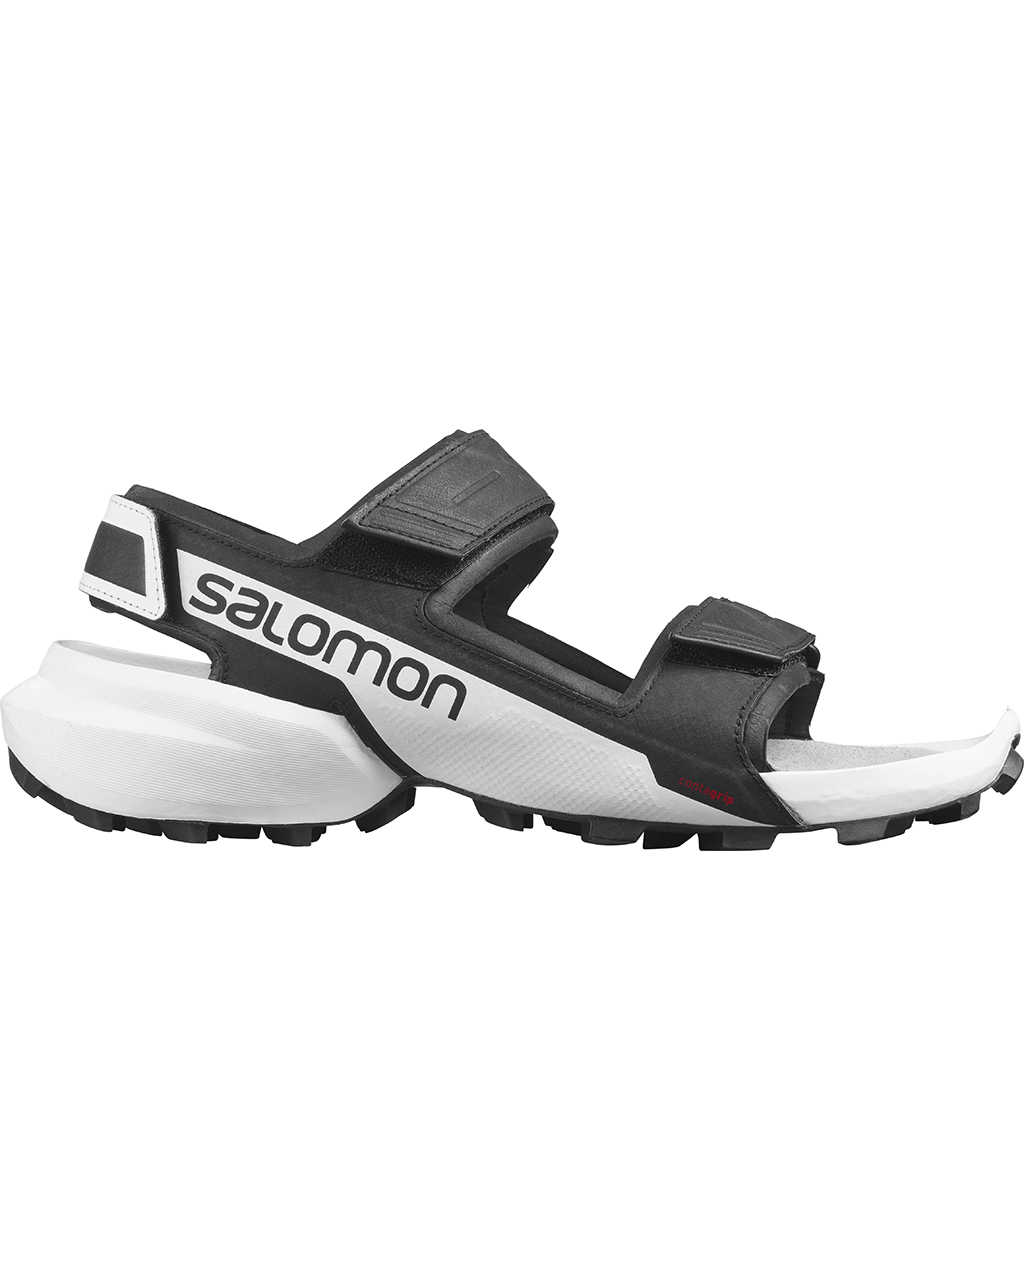 Salomon Speedcross Sandal Black/White/Black (Storlek 7.5 UK)